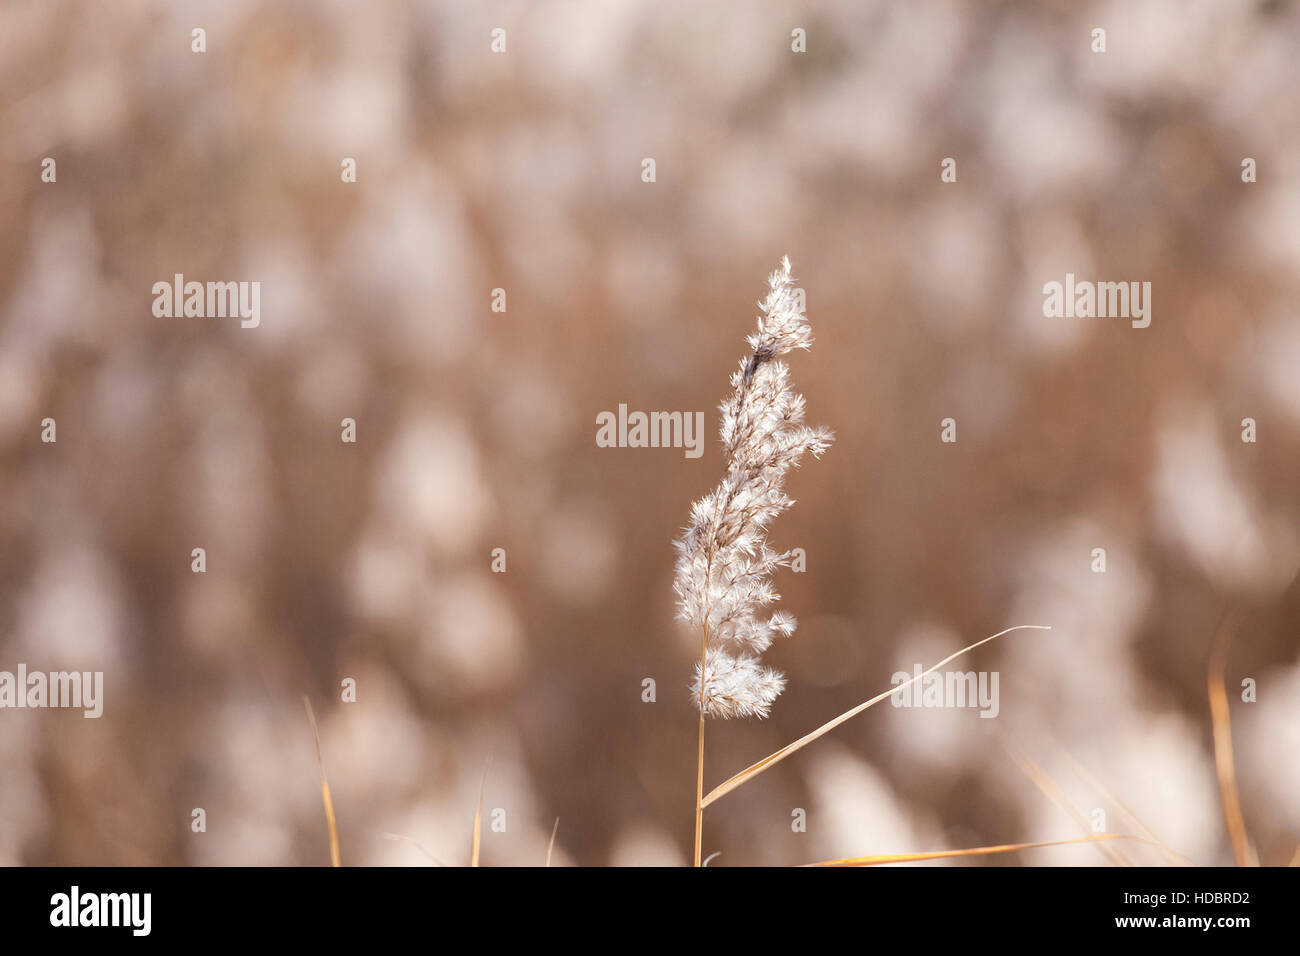 weiße gemeinsamen Reed mit Bewegungsunschärfe Hintergrund Stockfoto